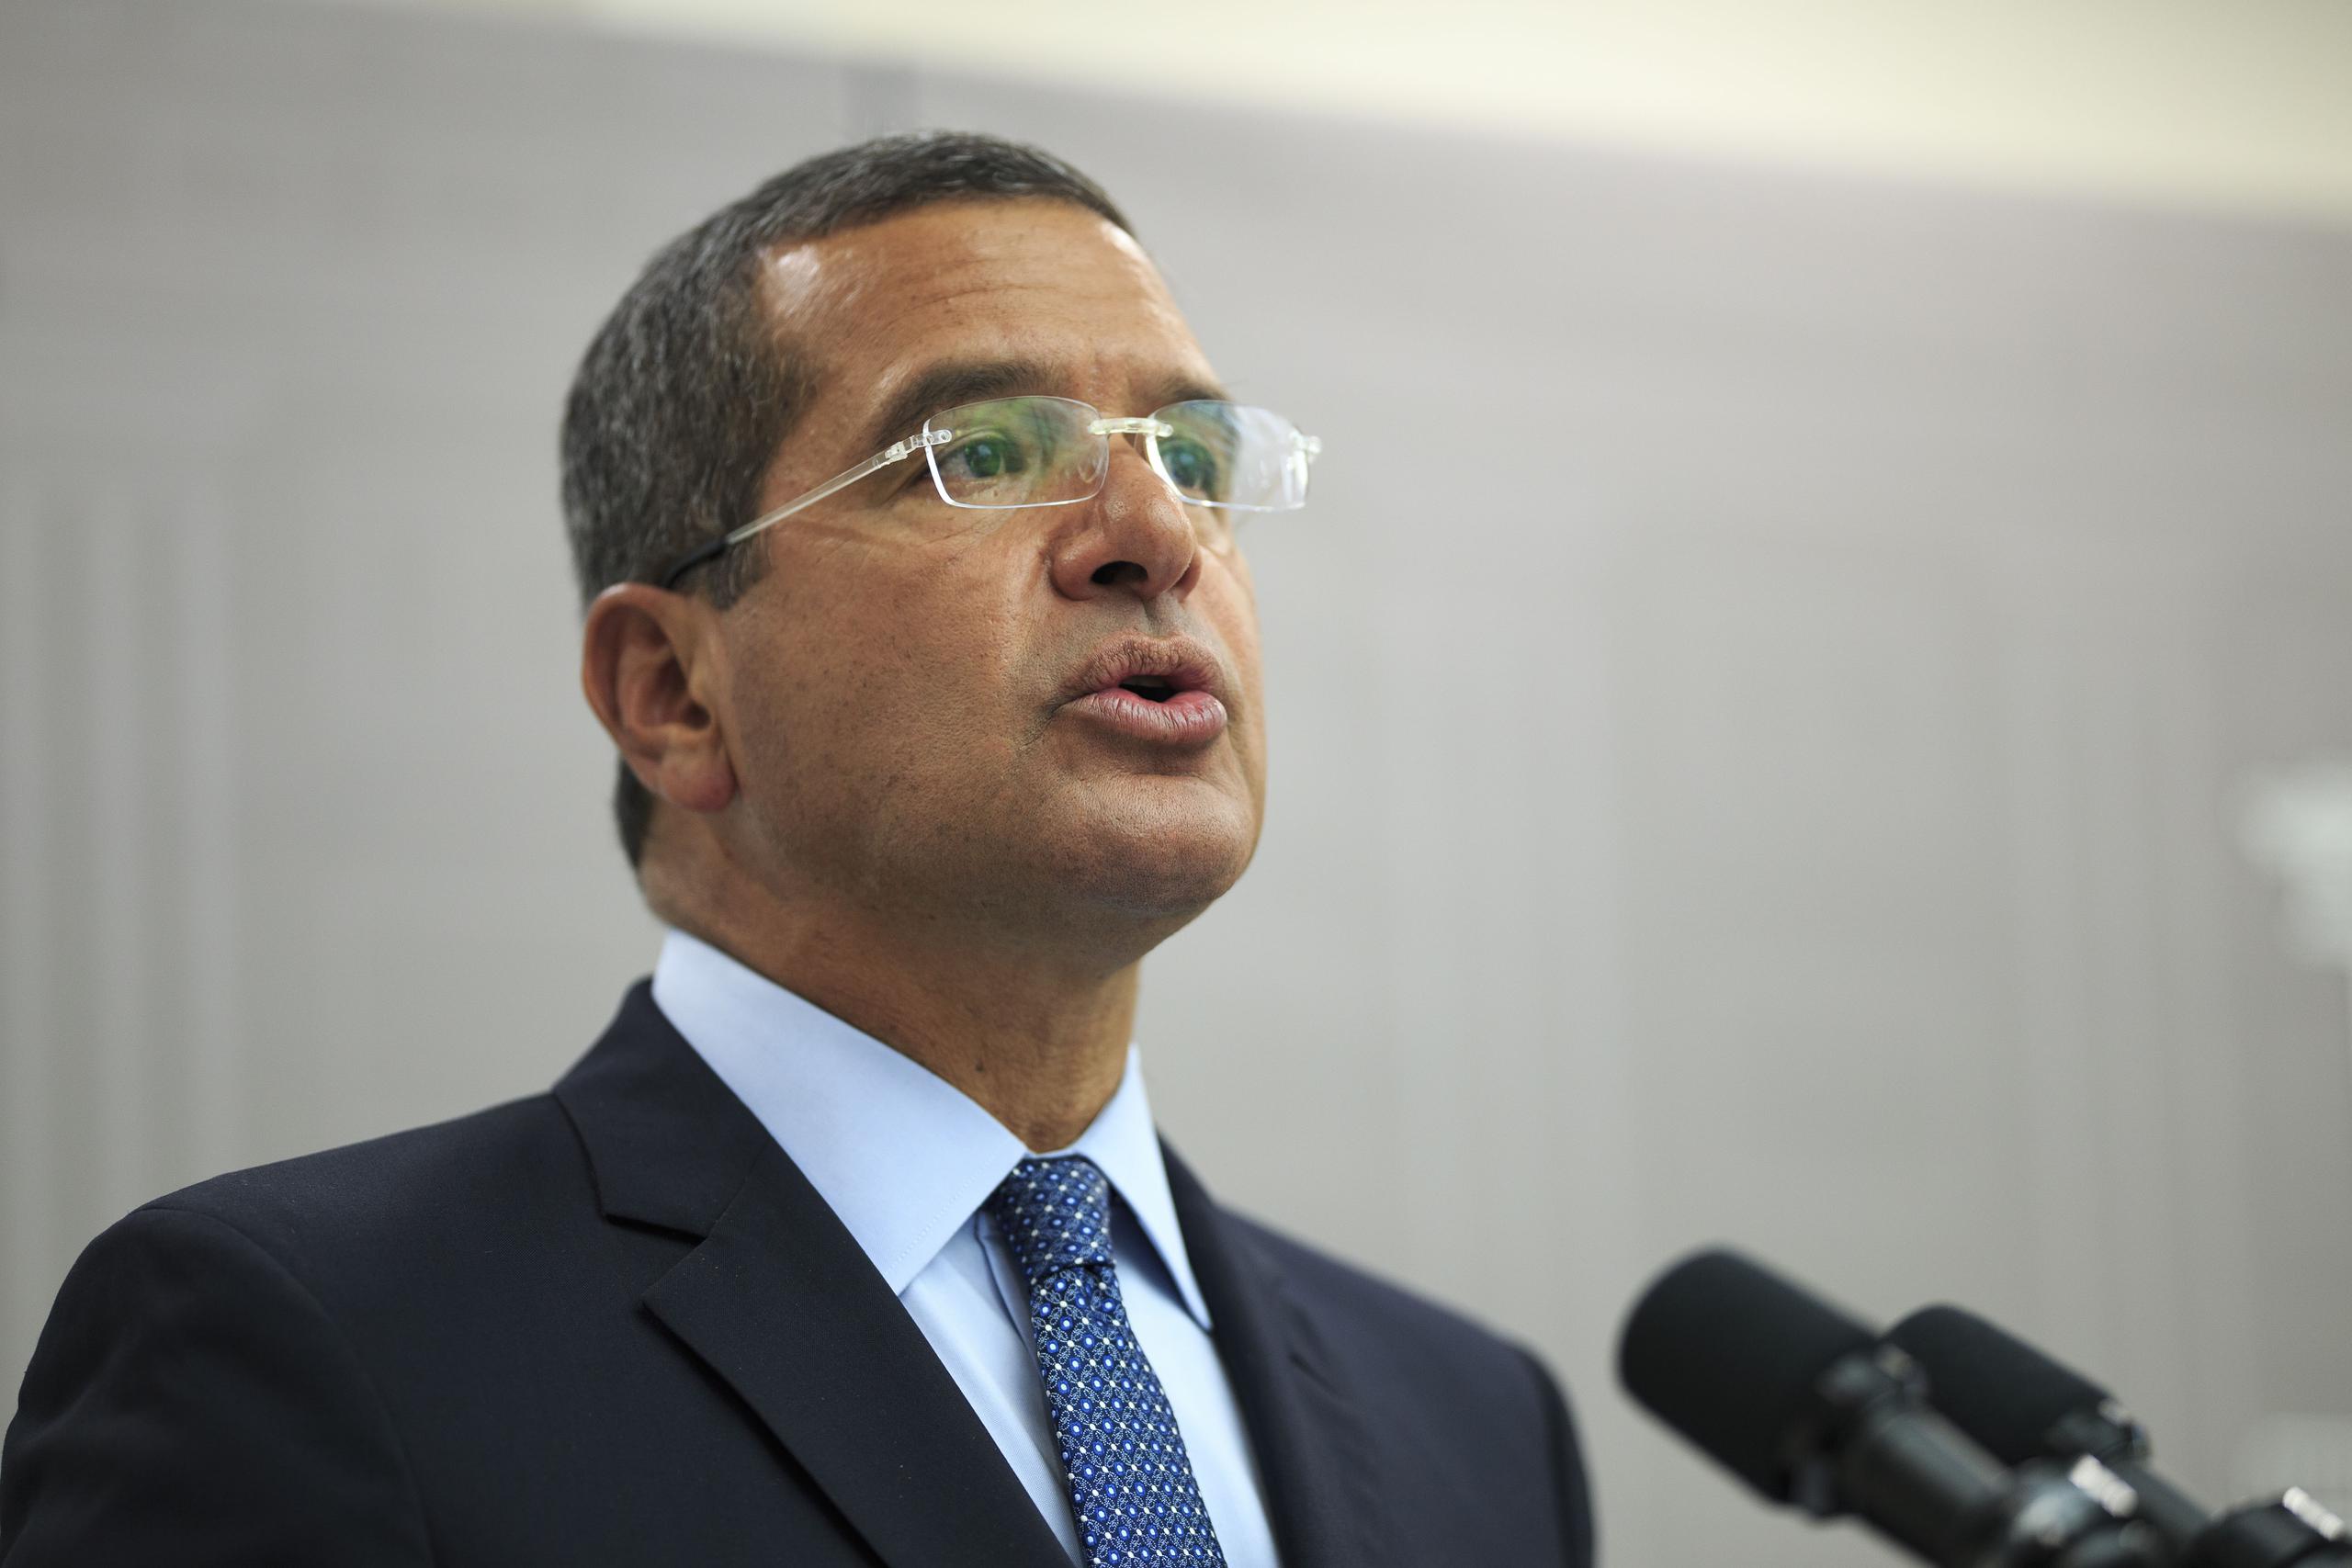 El gobernador Pedro Pierluisi, indicó que pedirá las reasignaciones para poder cubrir áreas que no se cubrieron en el presupuesto, como la Universidad de Puerto Rico y un aumento de salario a oficiales de corrección.